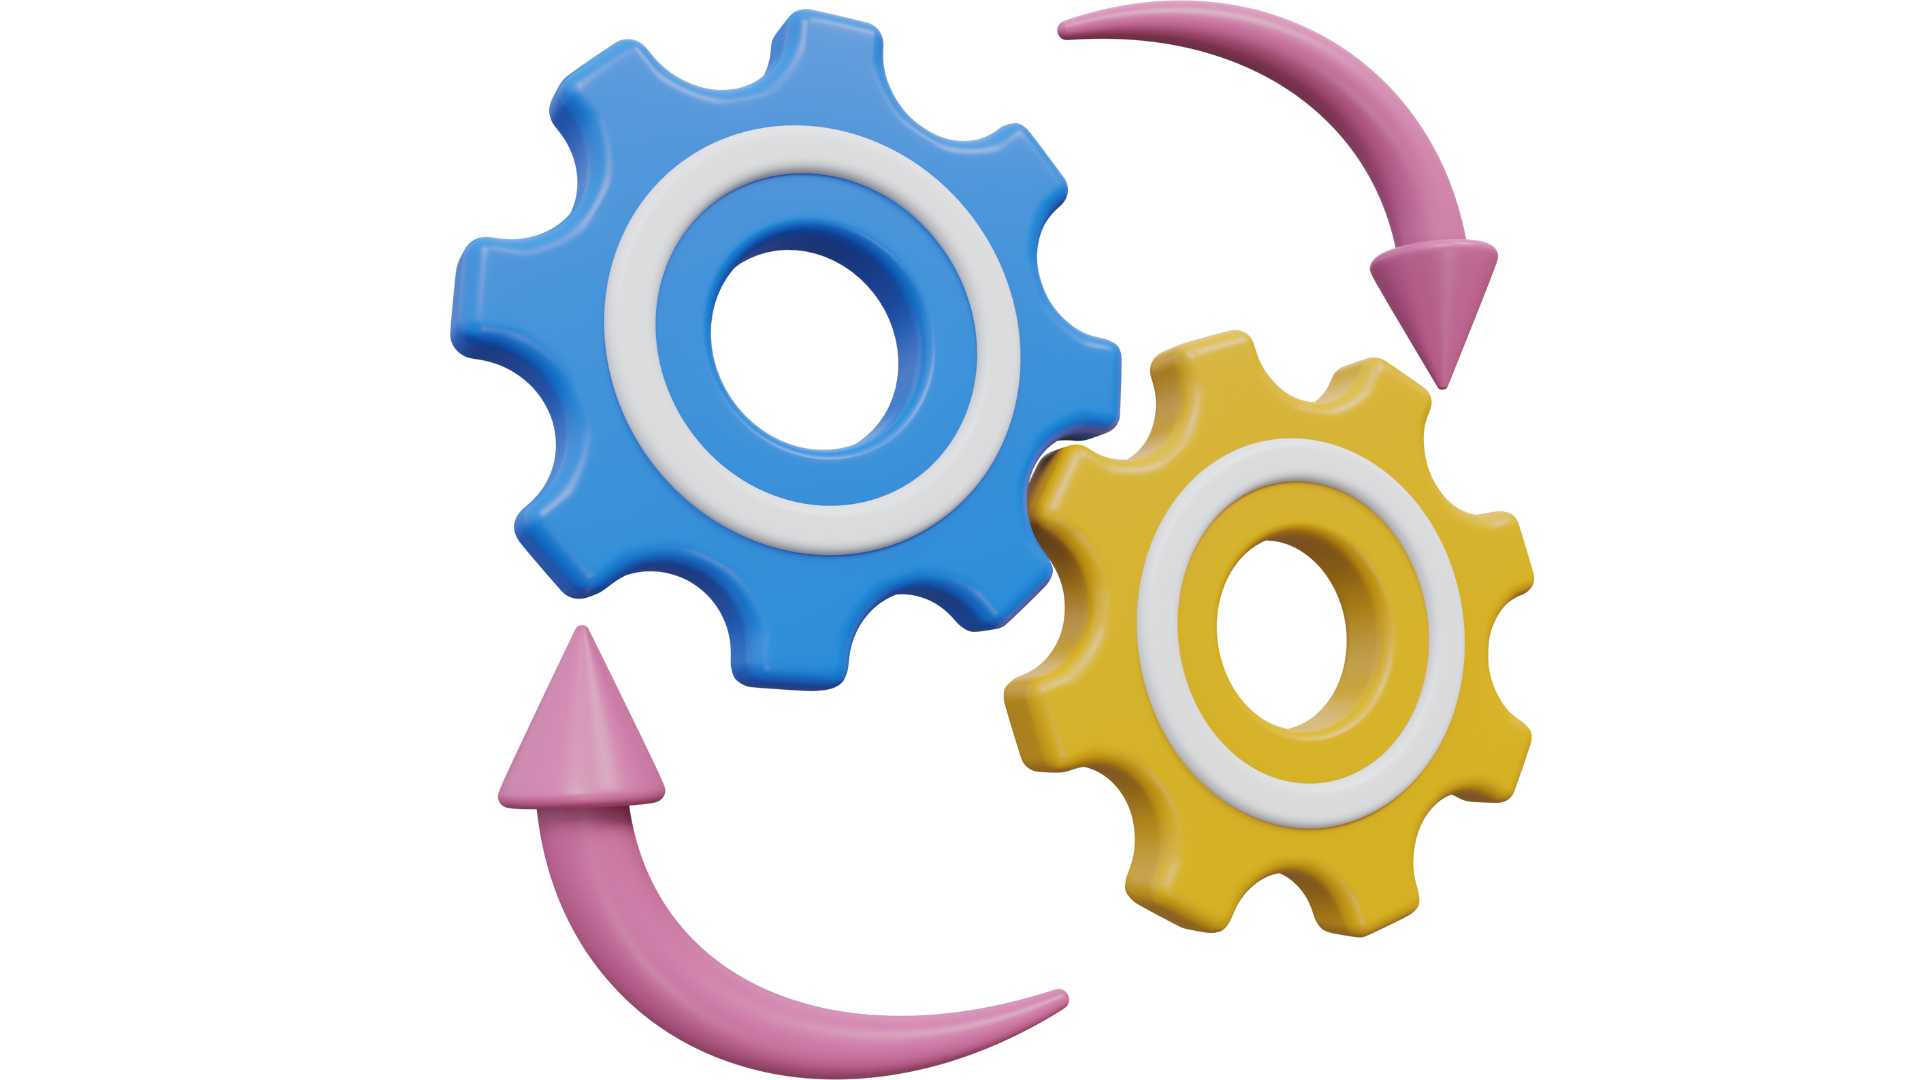 A imagem mostra duas engrenagens em 3D, uma azul e uma amarela, com uma seta rosa em formato circular entre elas, representando movimento ou interação mecânica. A representação sugere conceitos de engenharia, mecânica, ou trabalho em conjunto.